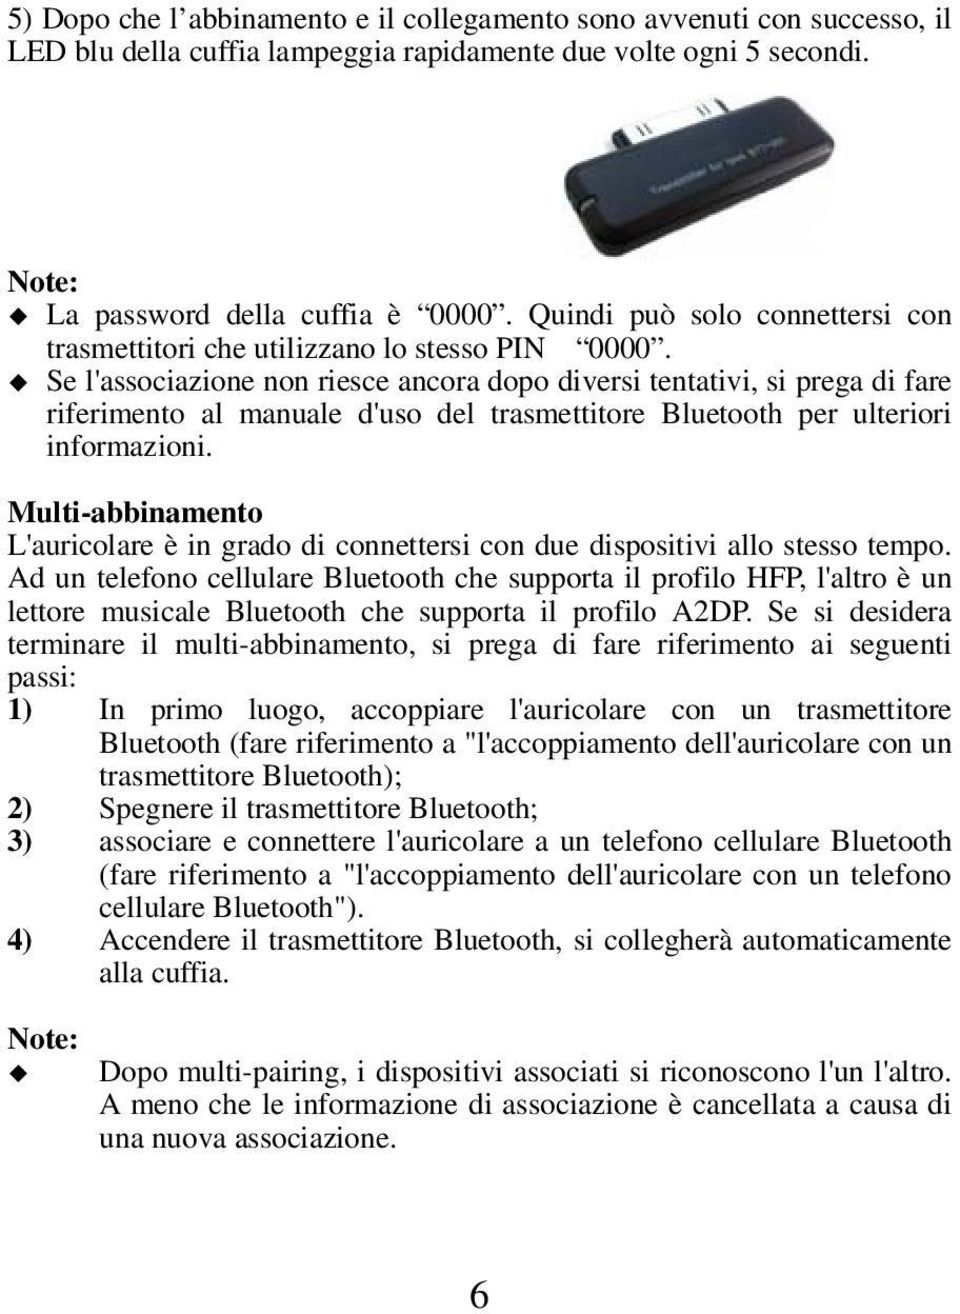 Se l'associazione non riesce ancora dopo diversi tentativi, si prega di fare riferimento al manuale d'uso del trasmettitore Bluetooth per ulteriori informazioni.